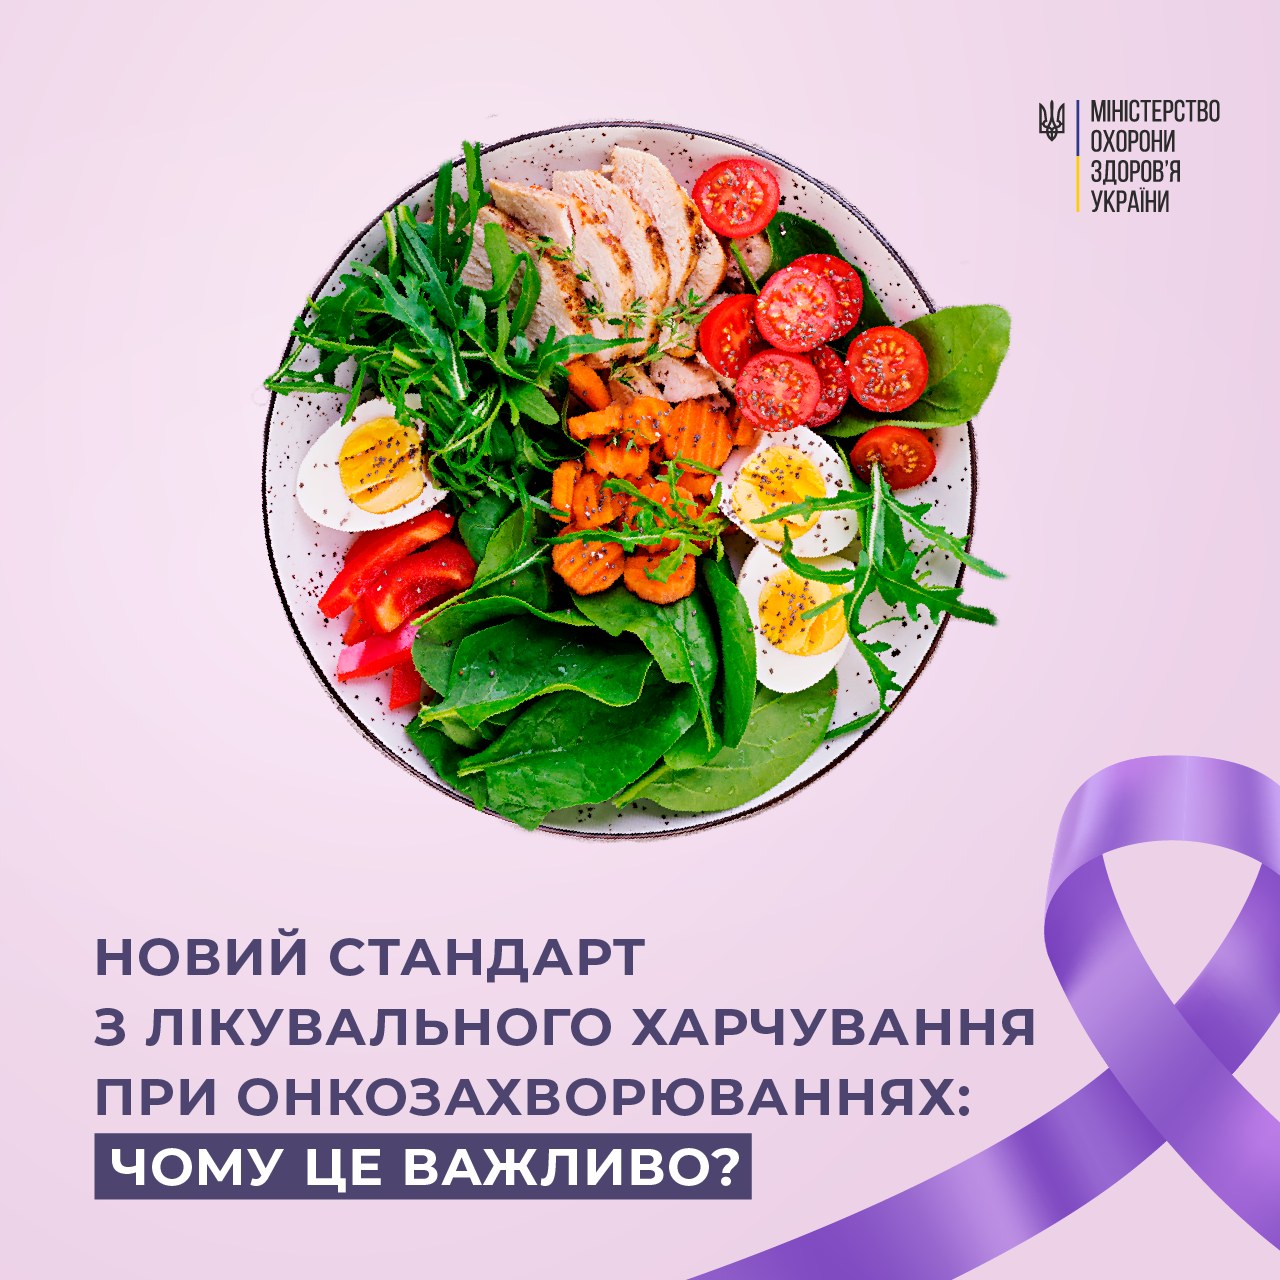 Тарілка зі здоровою їжею та напис "Новий стандарт з лікувального харчування при онкозахворюваннях: Чому це важливо?"